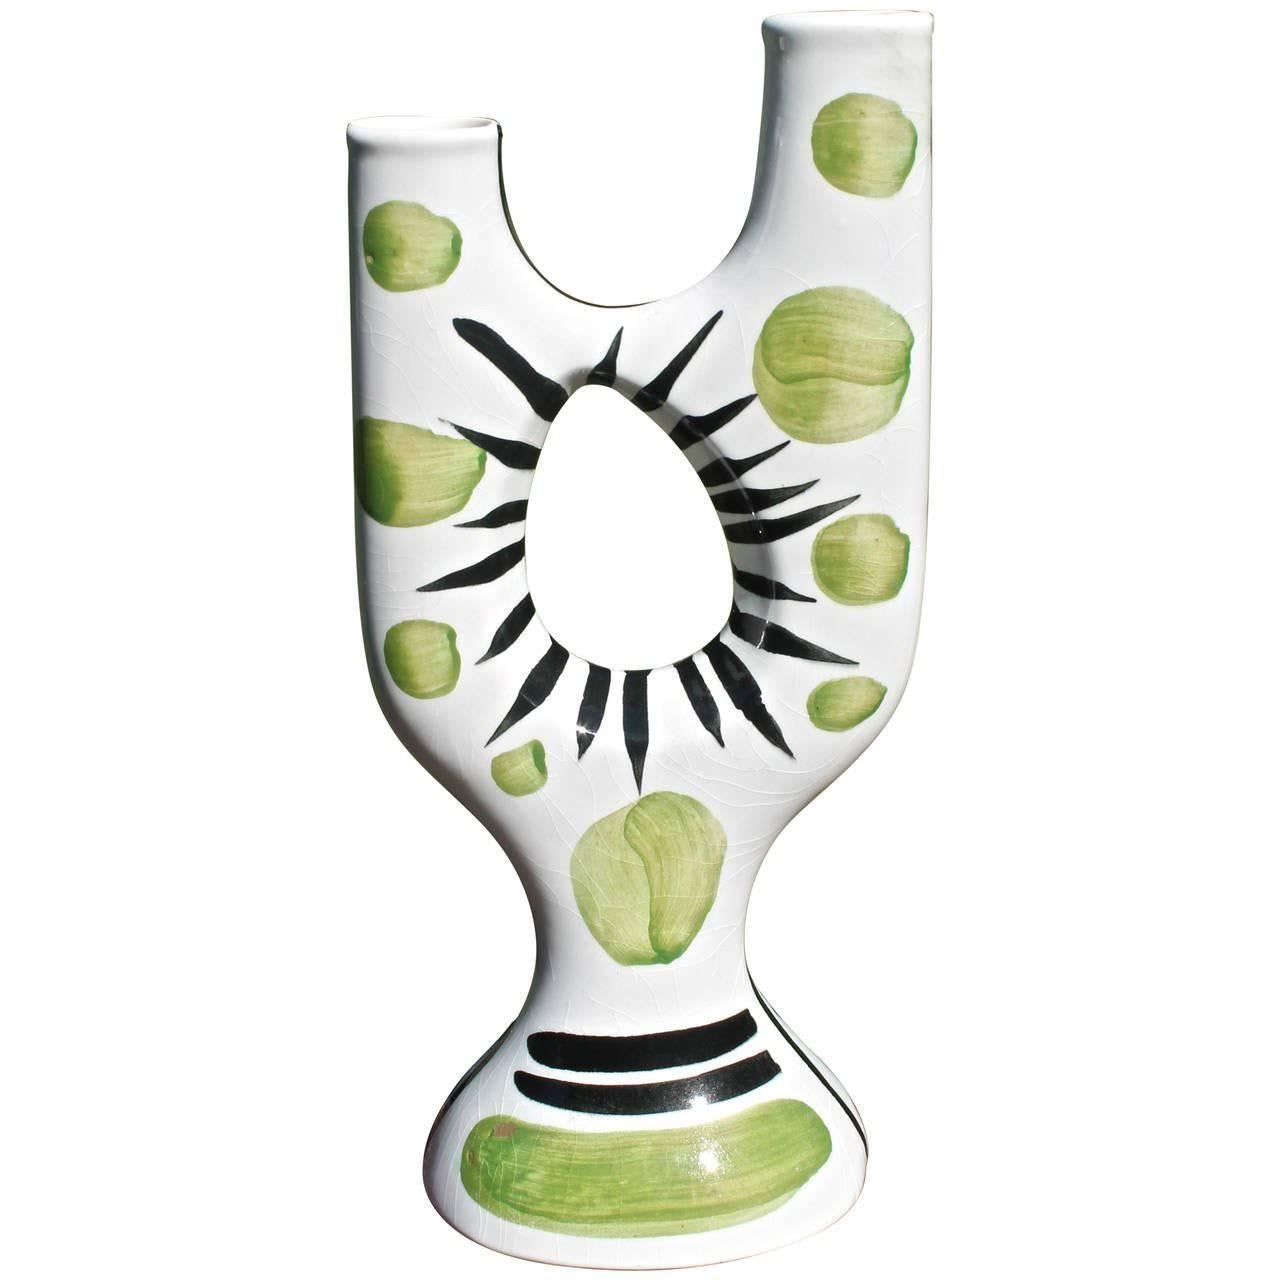 Atelier Revernay Midcentury Biomorphic Vase For Sale